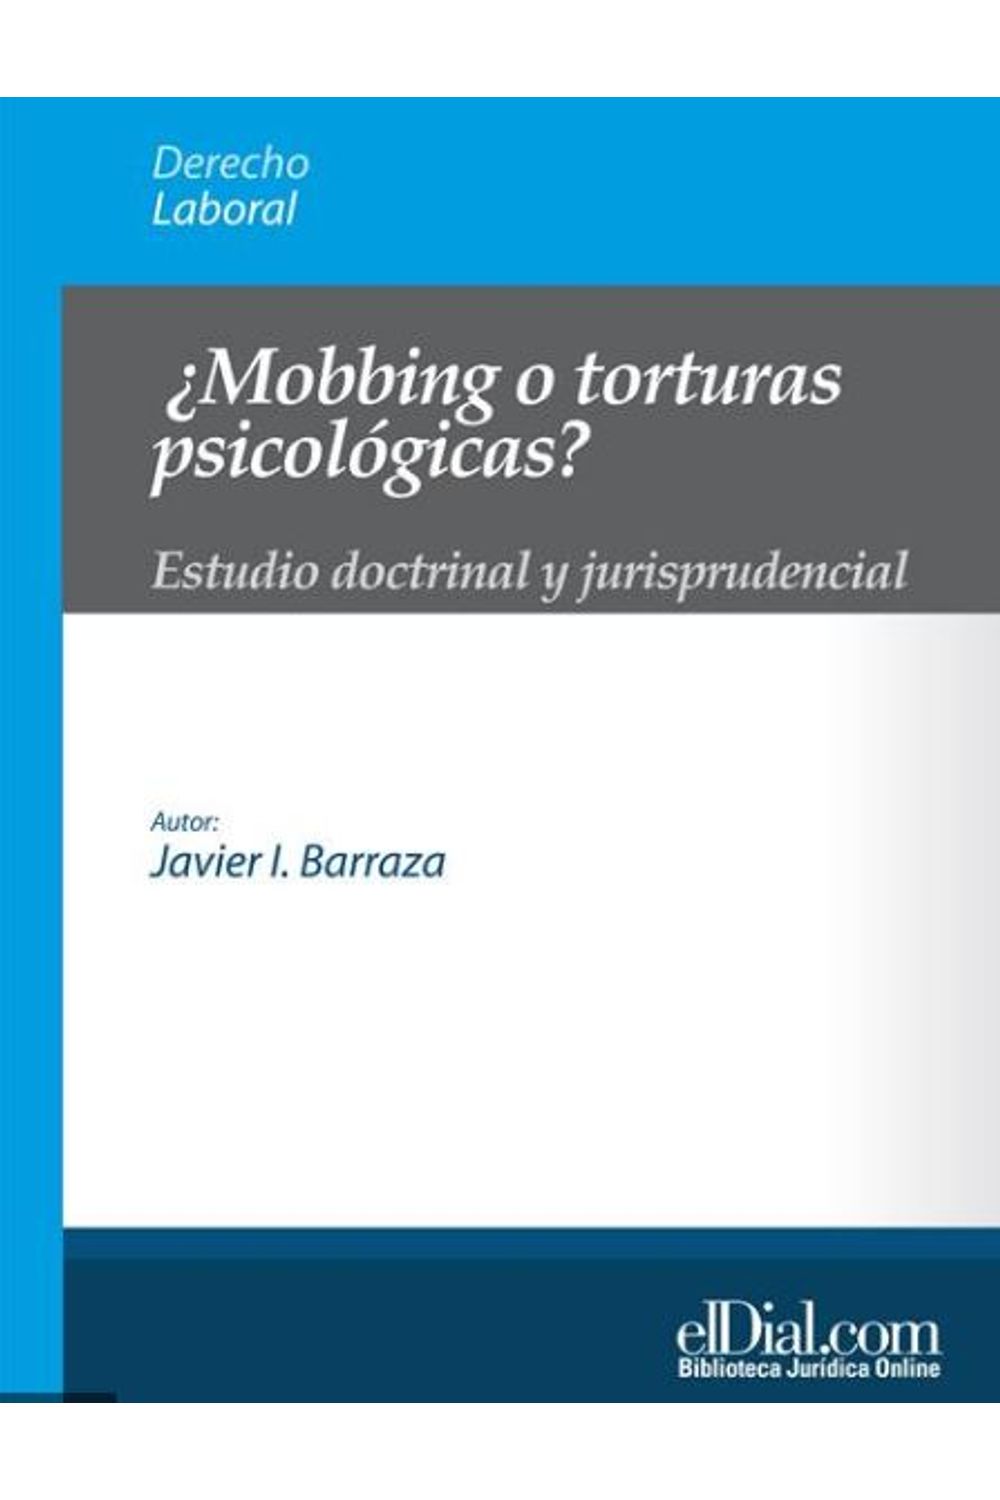 bm-mobbing-o-torturas-psicologicas-editorial-albrematica-9789871799176